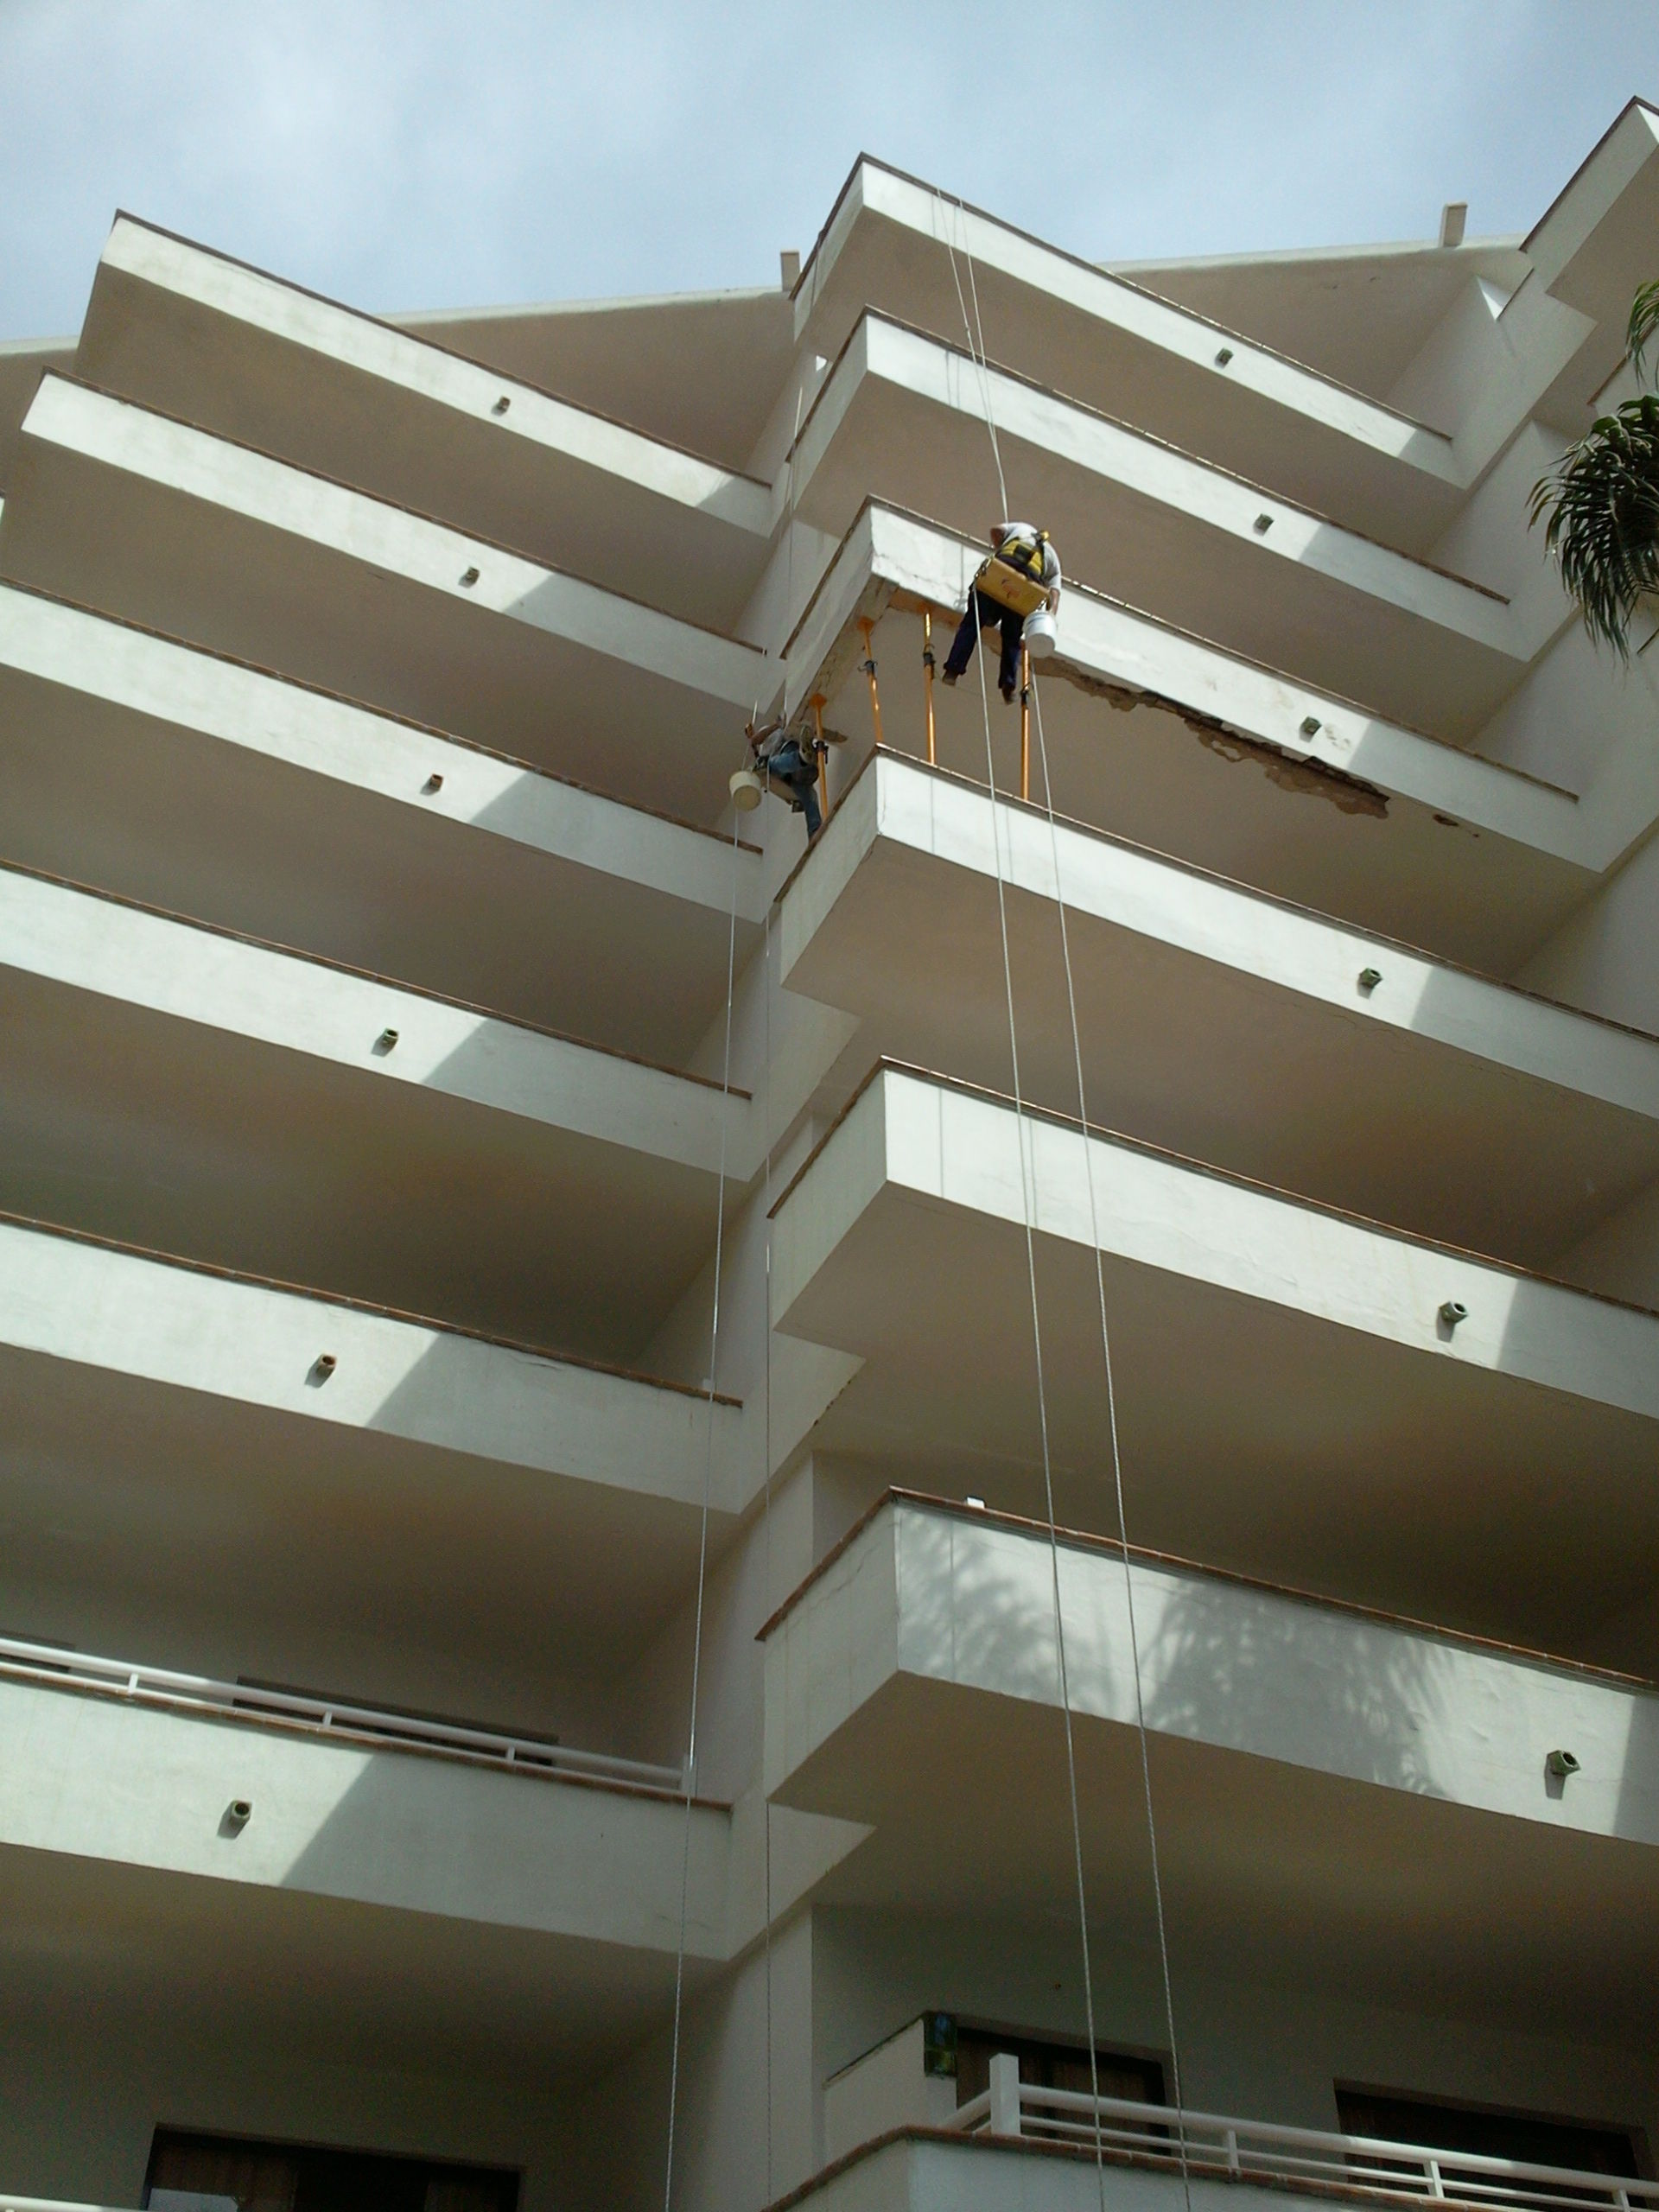 Foto 244 de Trabajos verticales en Tuineje | Vertimax